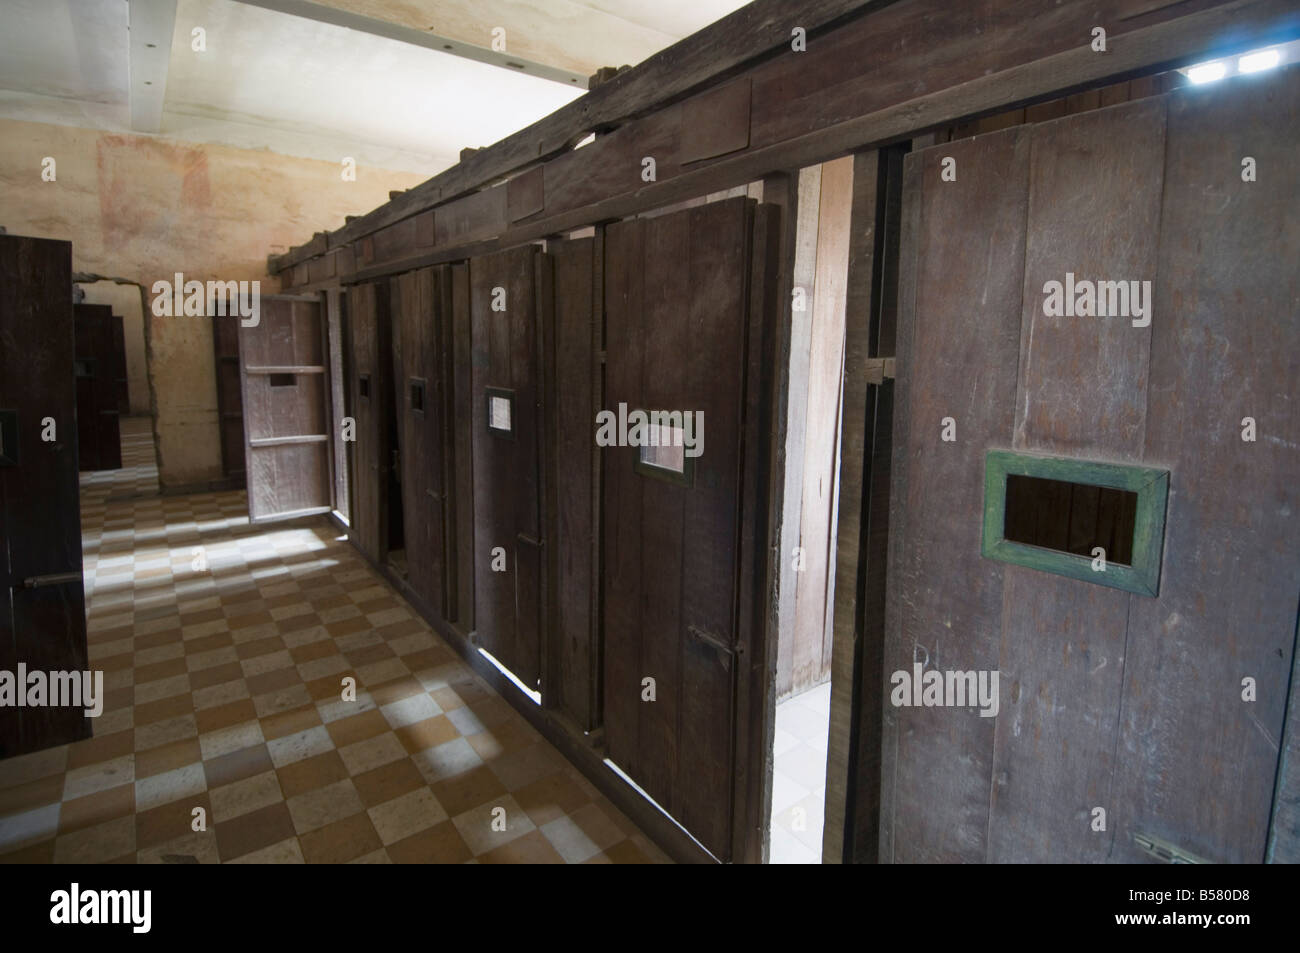 El Museo del Genocidio en una antigua escuela que fue utilizada por Pol Pot por tortura, en Phnom Penh, Camboya, Indochina Foto de stock